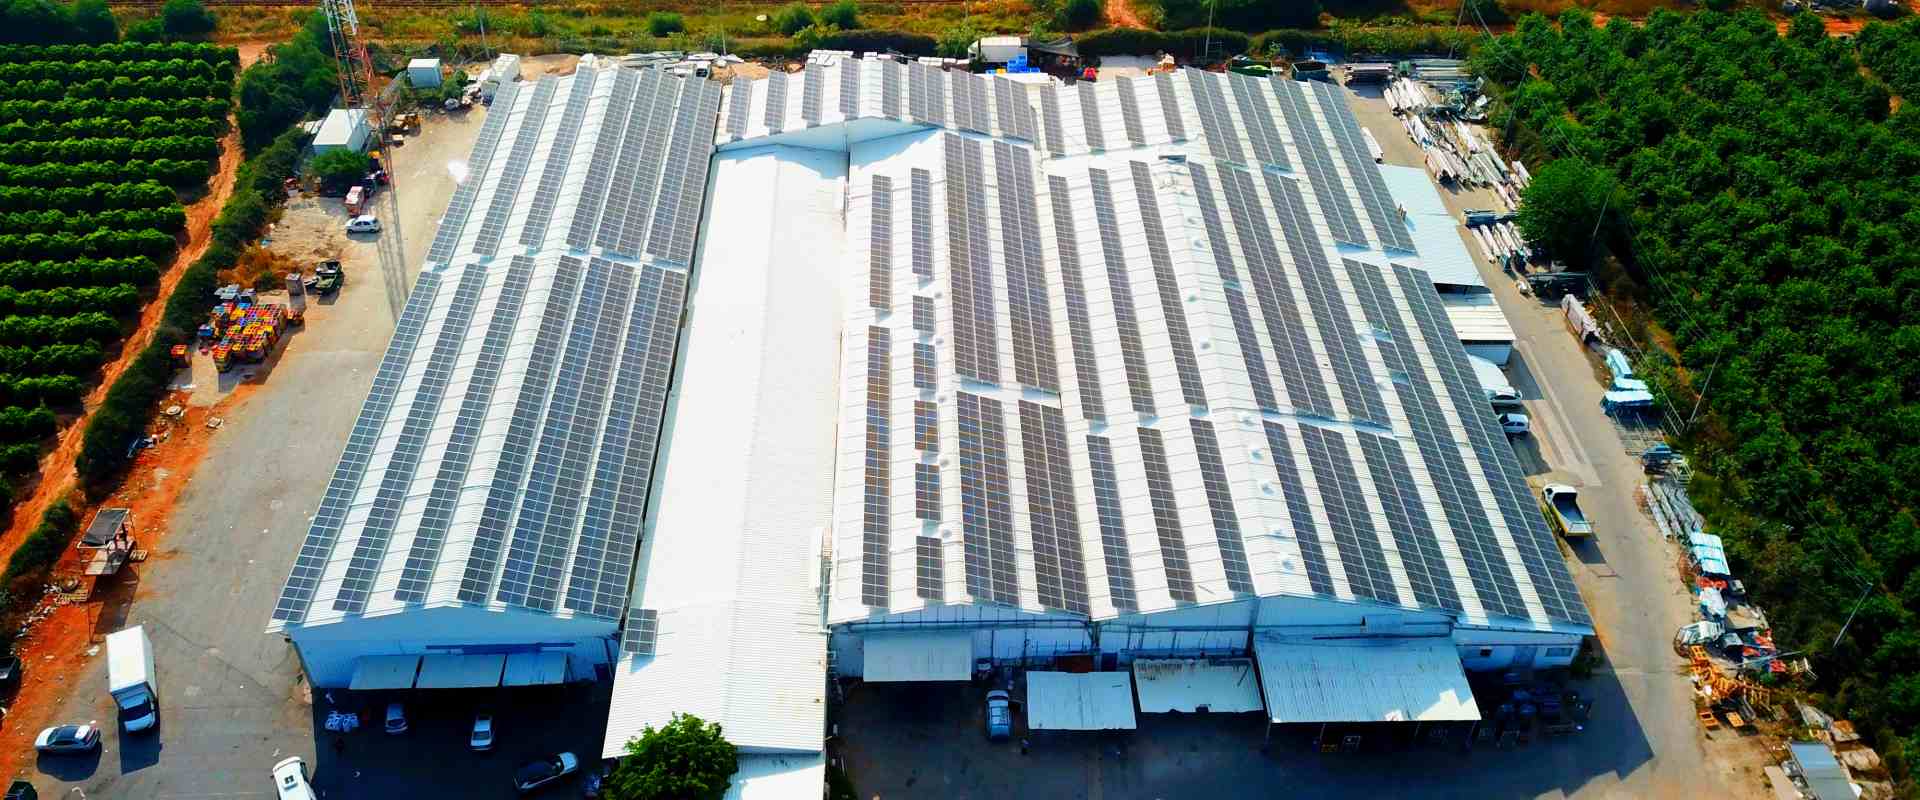 מערכות סולאריות על גגות בתעשייה | מערכות סולאריות מסחריות